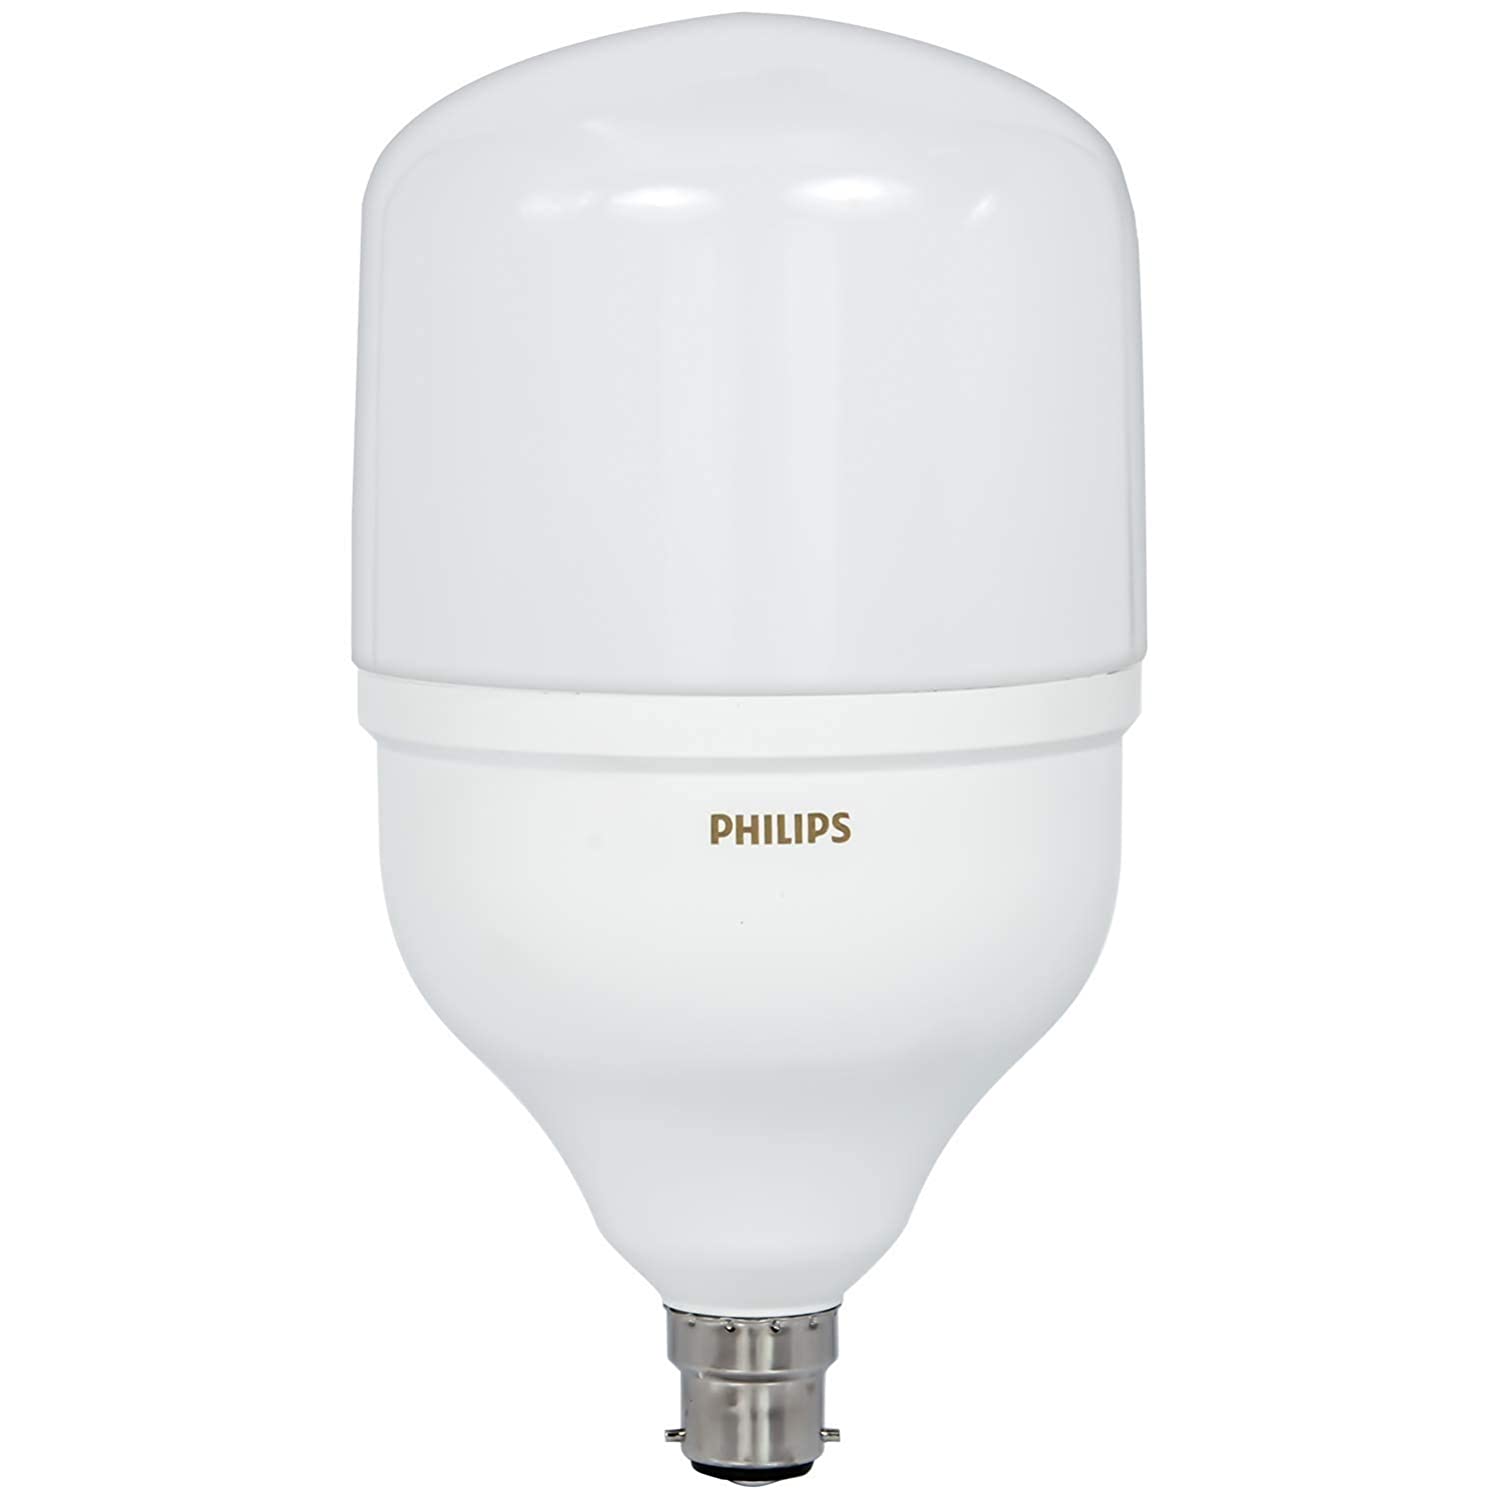 Philips Stellar Bright high wattage LED Bulb